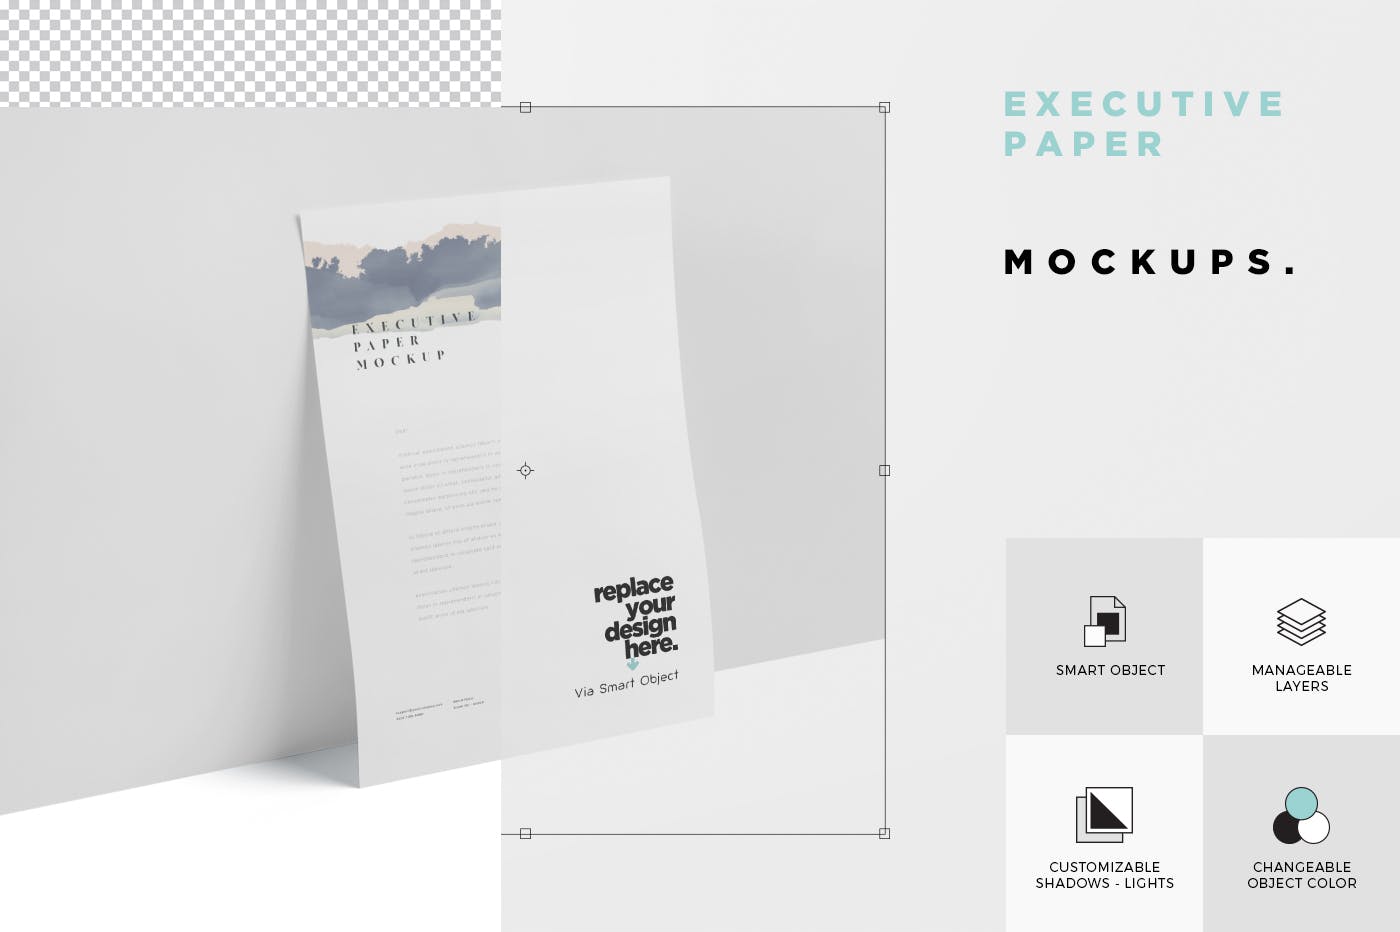 企业宣传单张设计效果图样机蚂蚁素材精选 Executive Paper Mockup – 7×10 Inch Size插图(5)